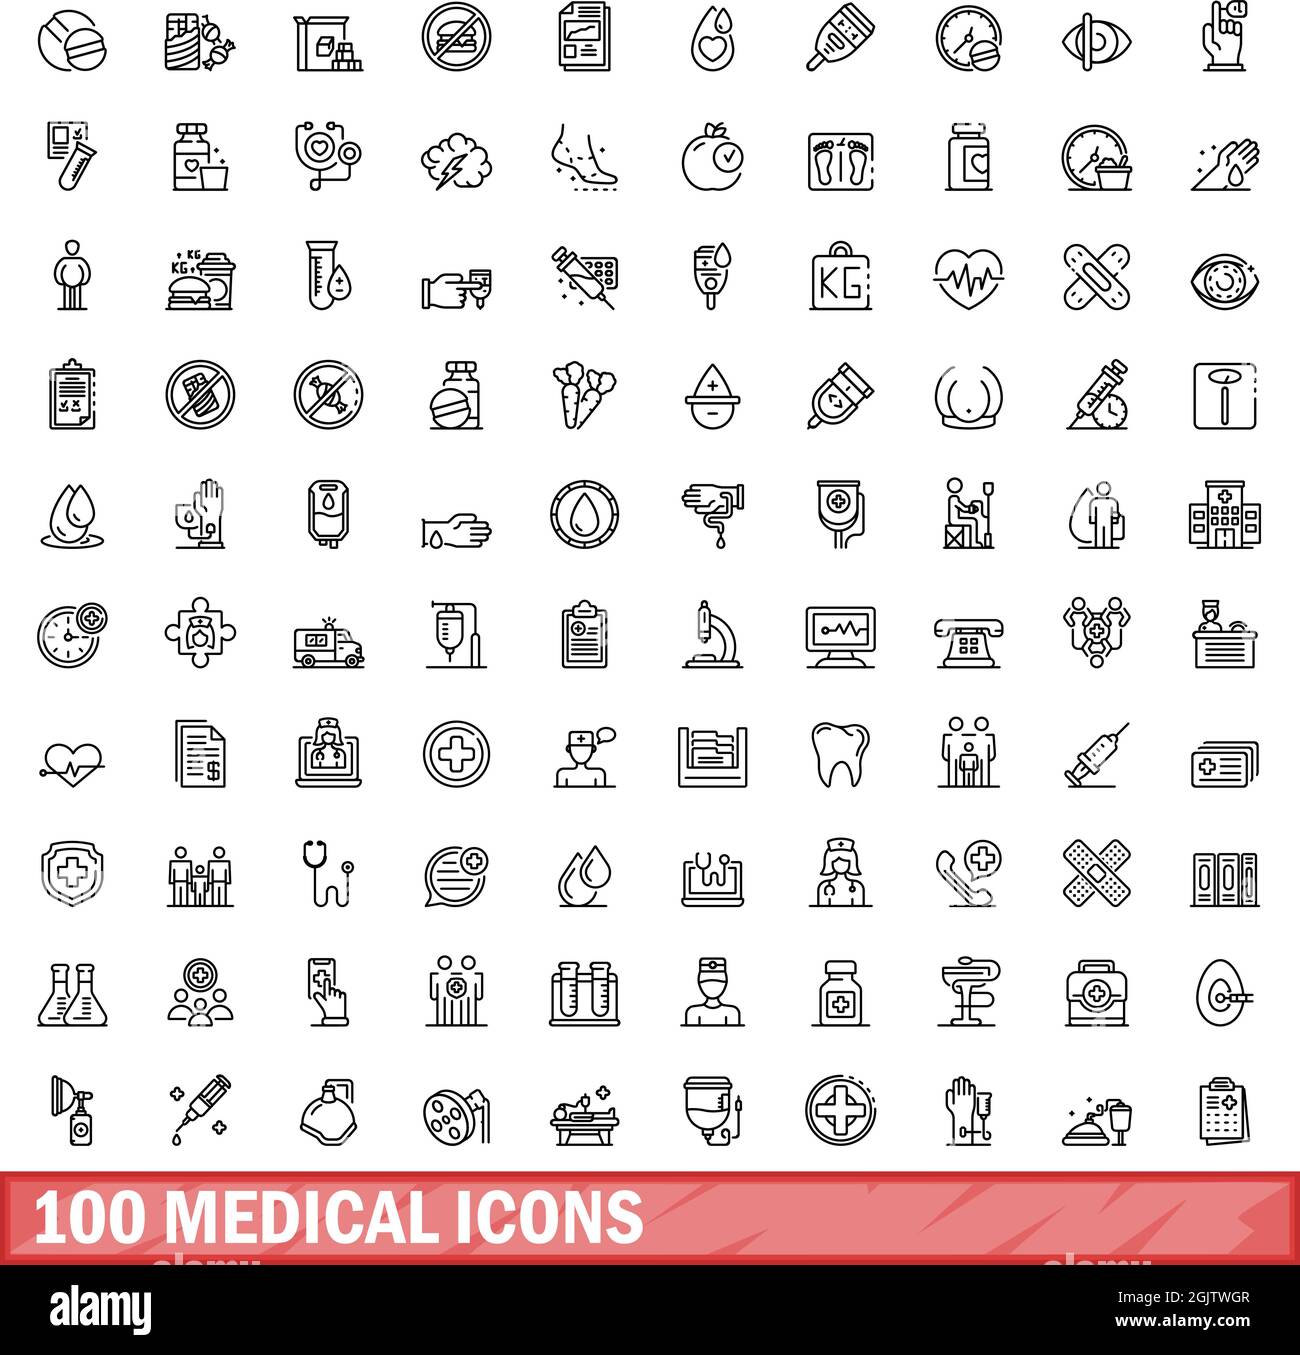 ensemble de 100 icônes médicales. Illustration de 100 icônes médicales ensemble de vecteurs isolé sur fond blanc Illustration de Vecteur